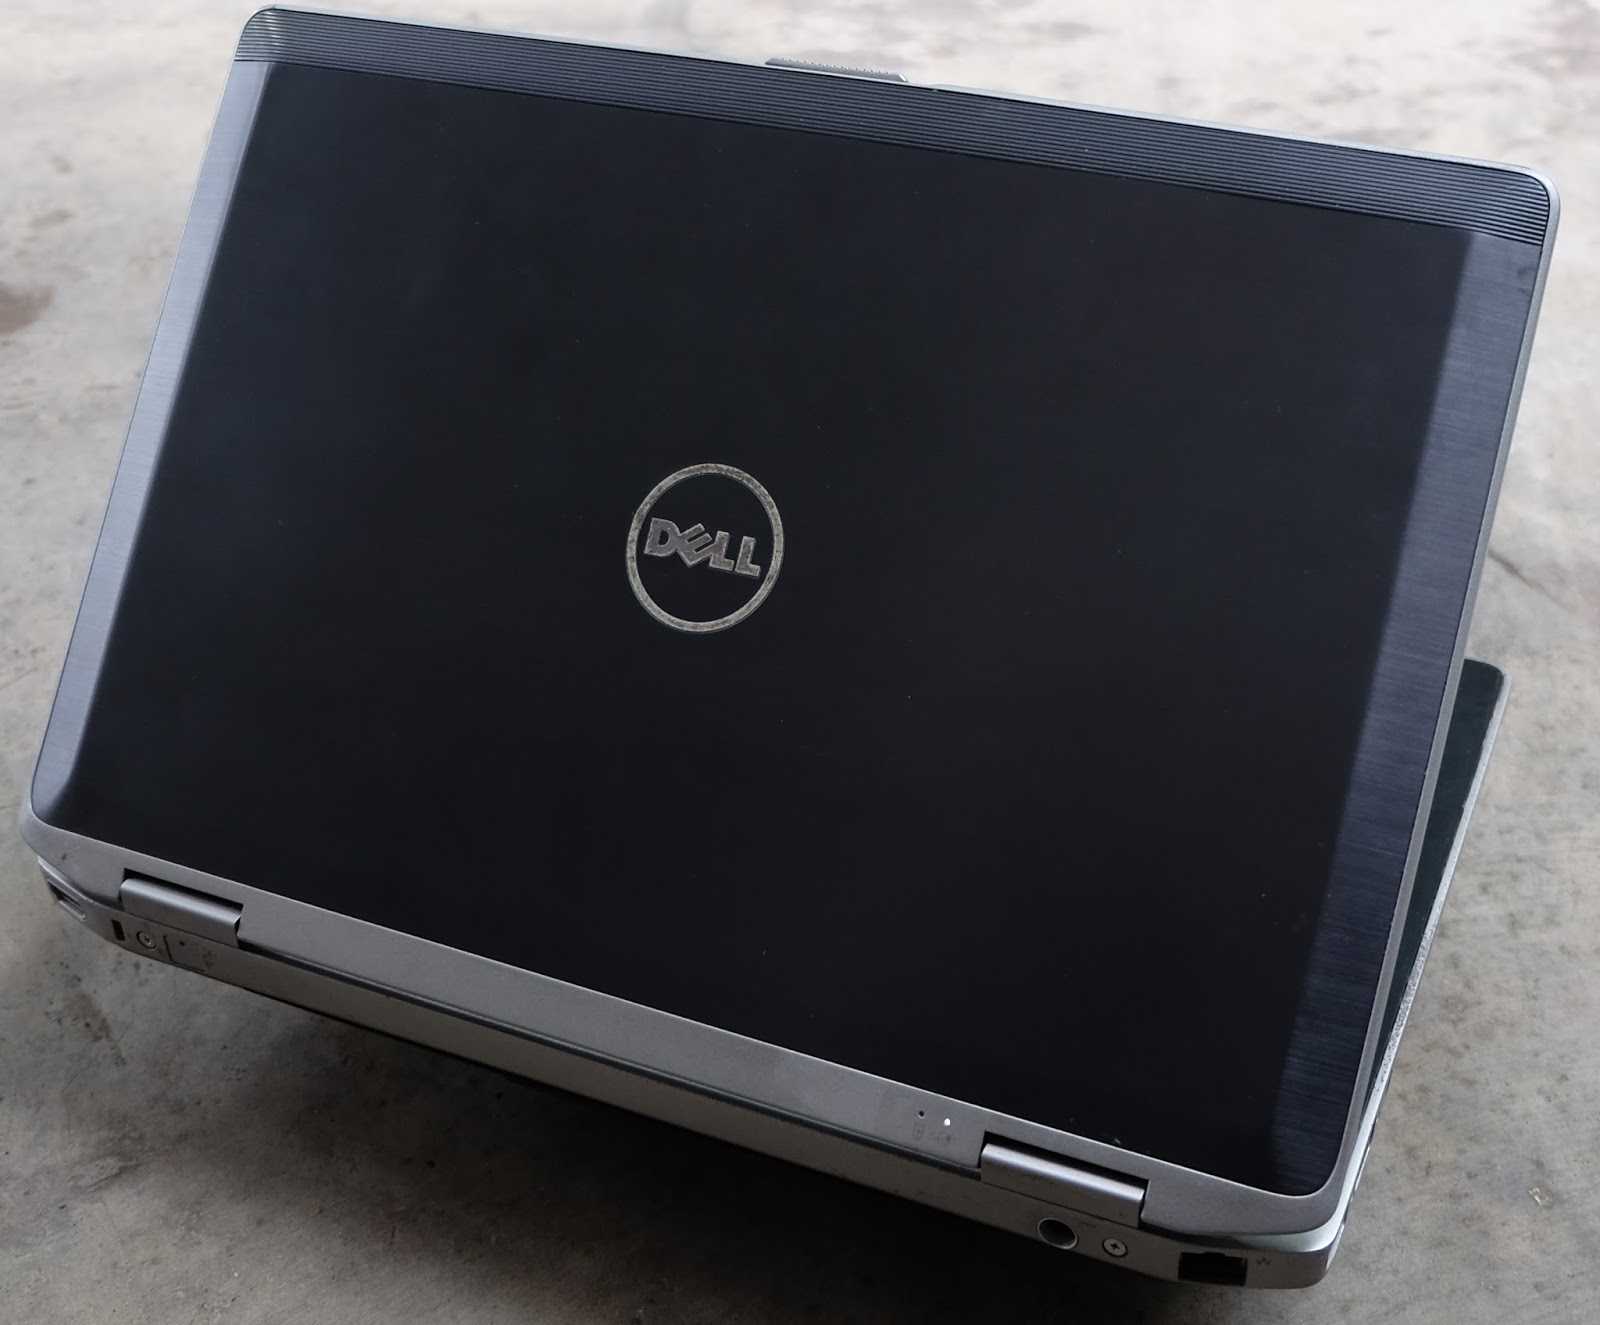 Ноутбук Dell Latitude E5430 (L065430102E) - подробные характеристики обзоры видео фото Цены в интернет-магазинах где можно купить ноутбук Dell Latitude E5430 (L065430102E)